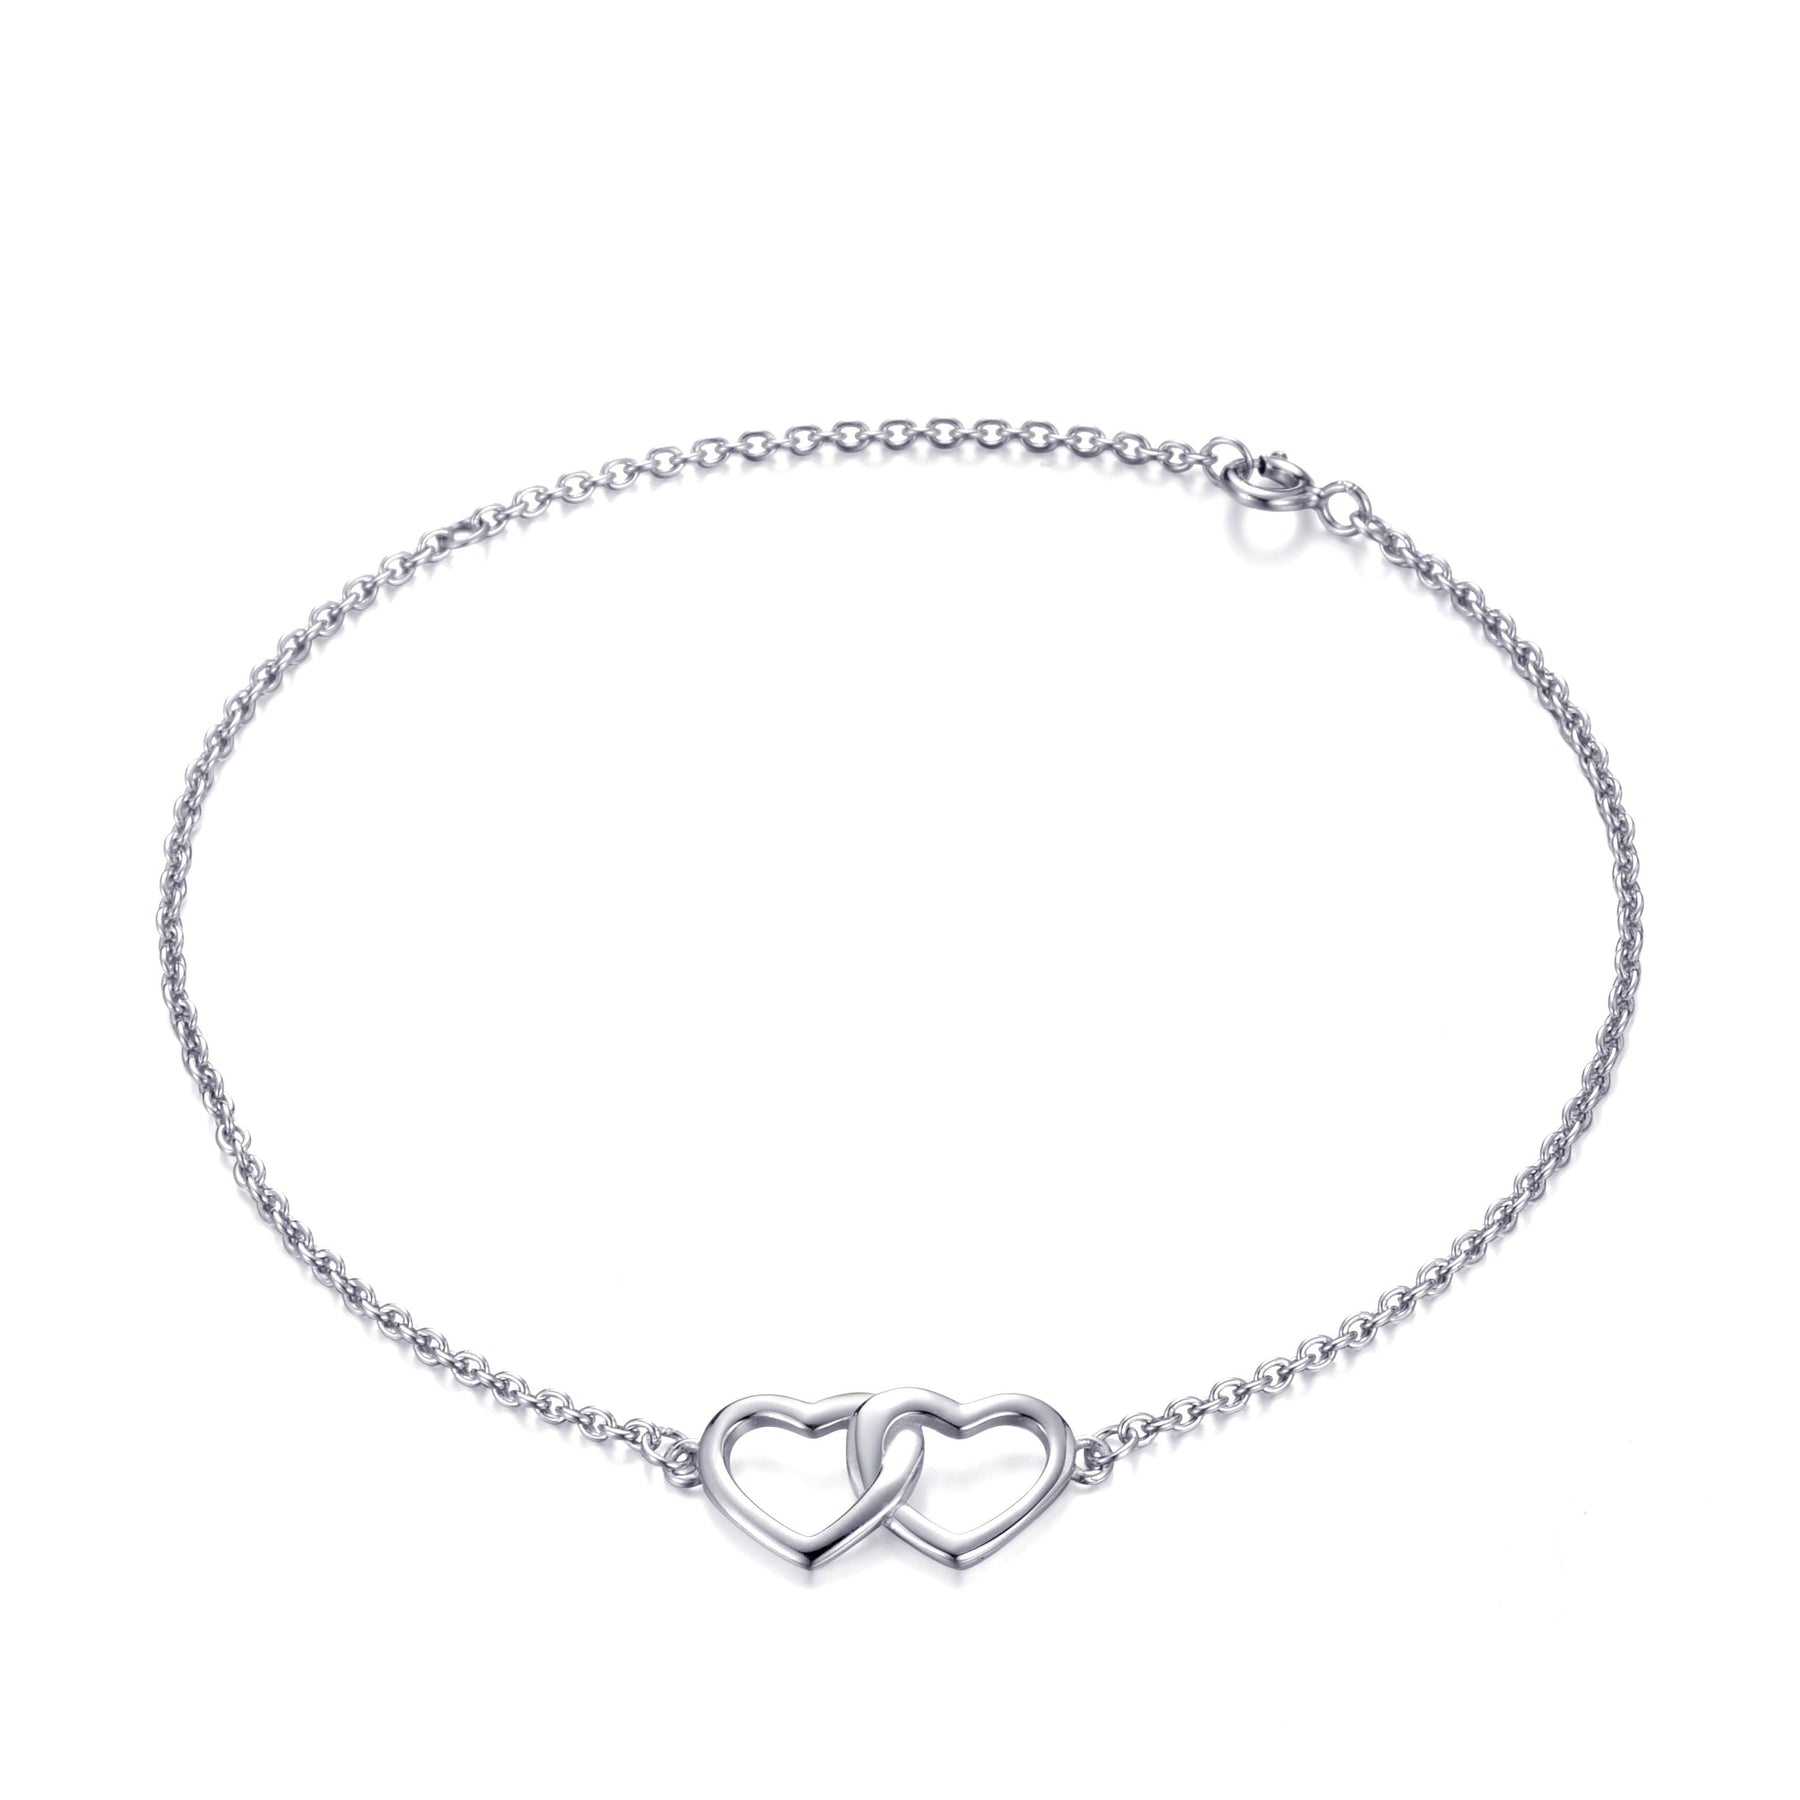 Heart Link Bracelet form Philip Jones Jewellery